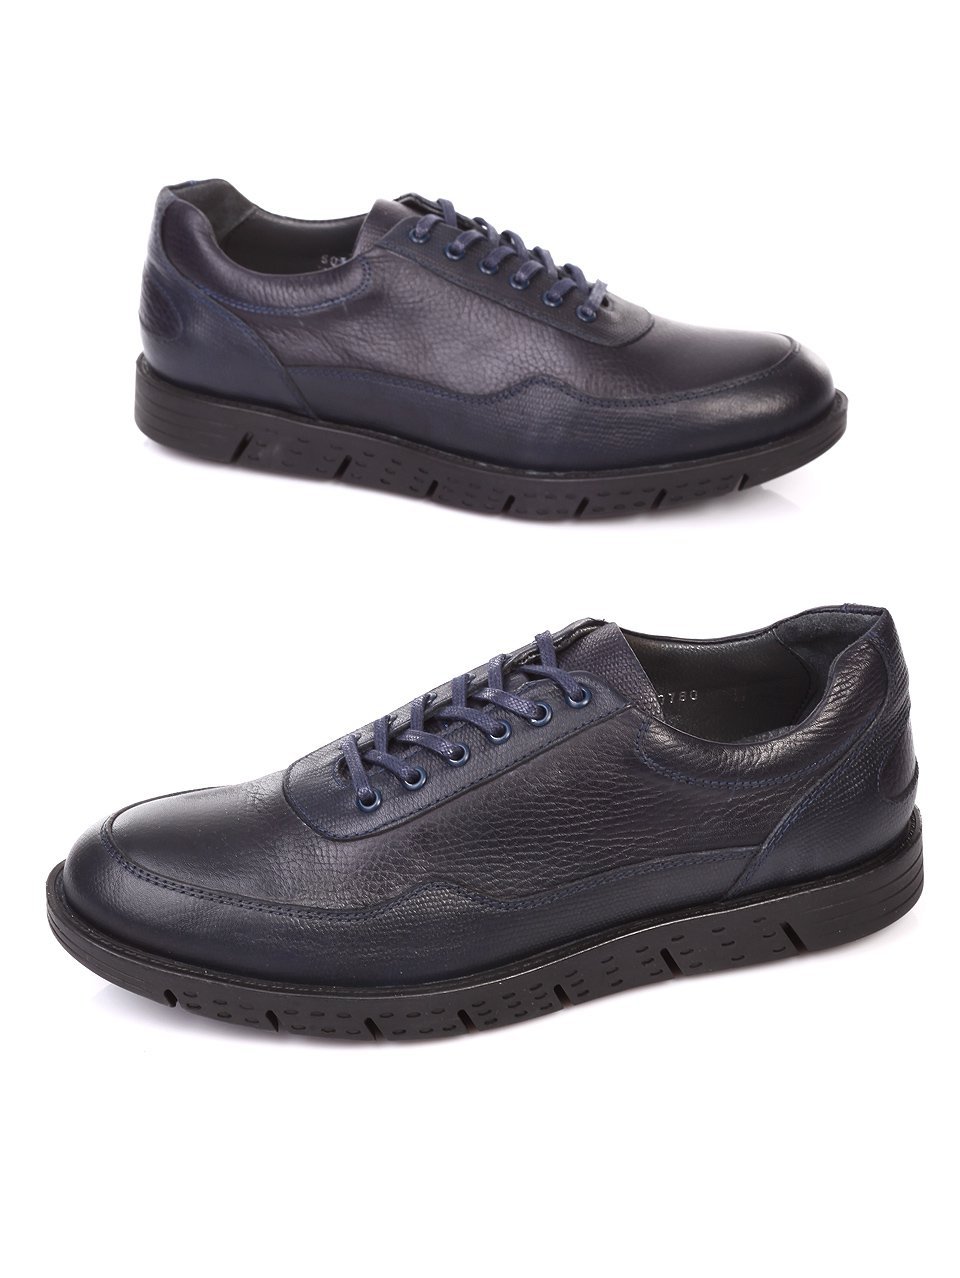 Ежедневни мъжки обувки от естествена кожа в синьо 619-207 navy